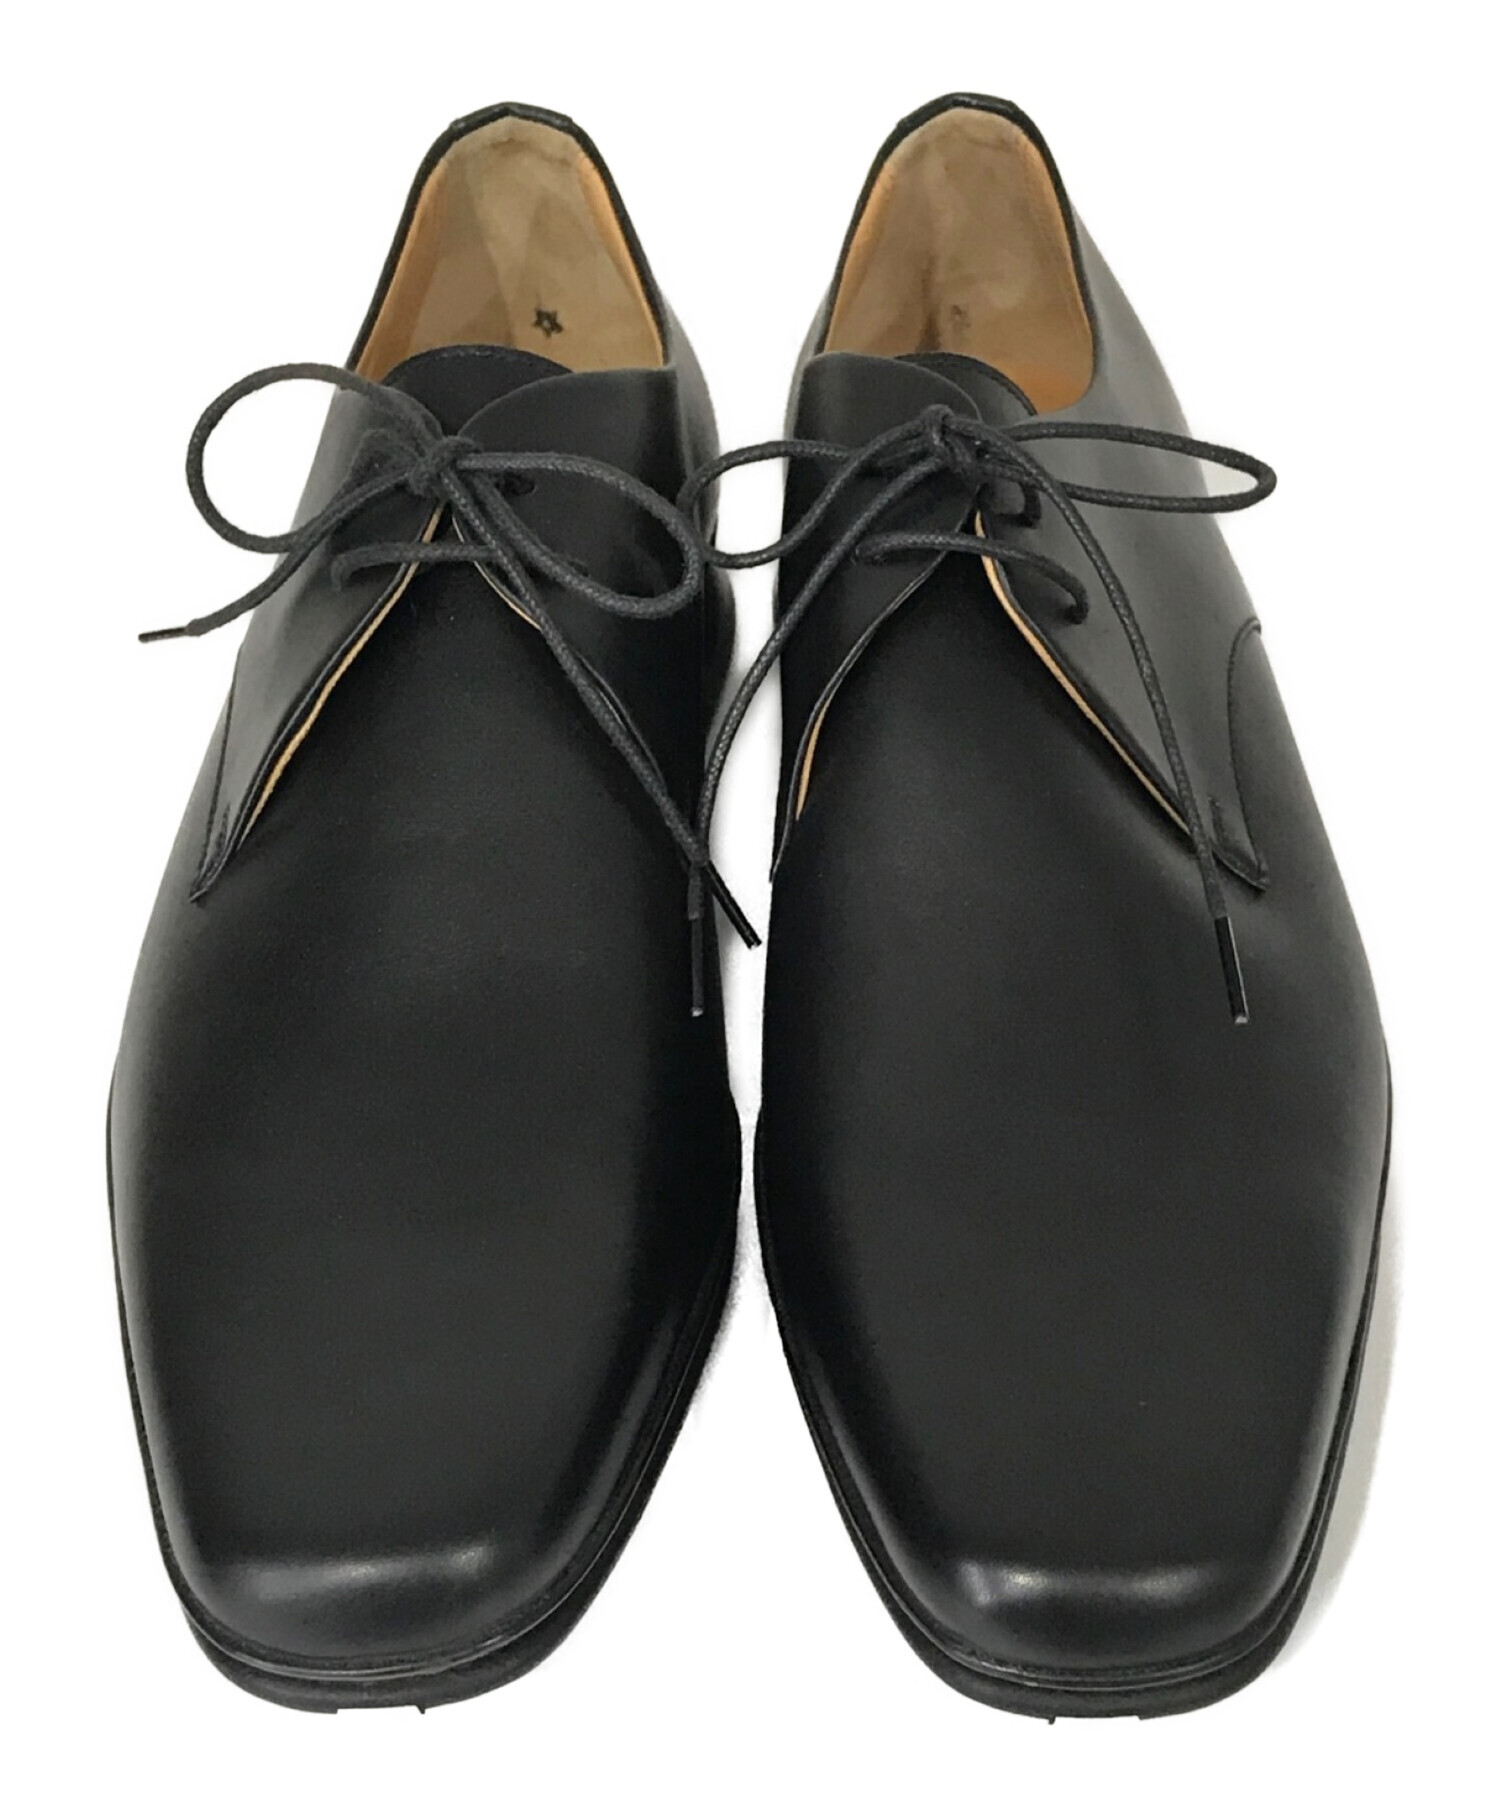 美品 エルメス HERMES レザーシューズ ダービーシューズ カーフレザー シューズ 靴 メンズ 40 1/2(25.5cm相当) ブラック